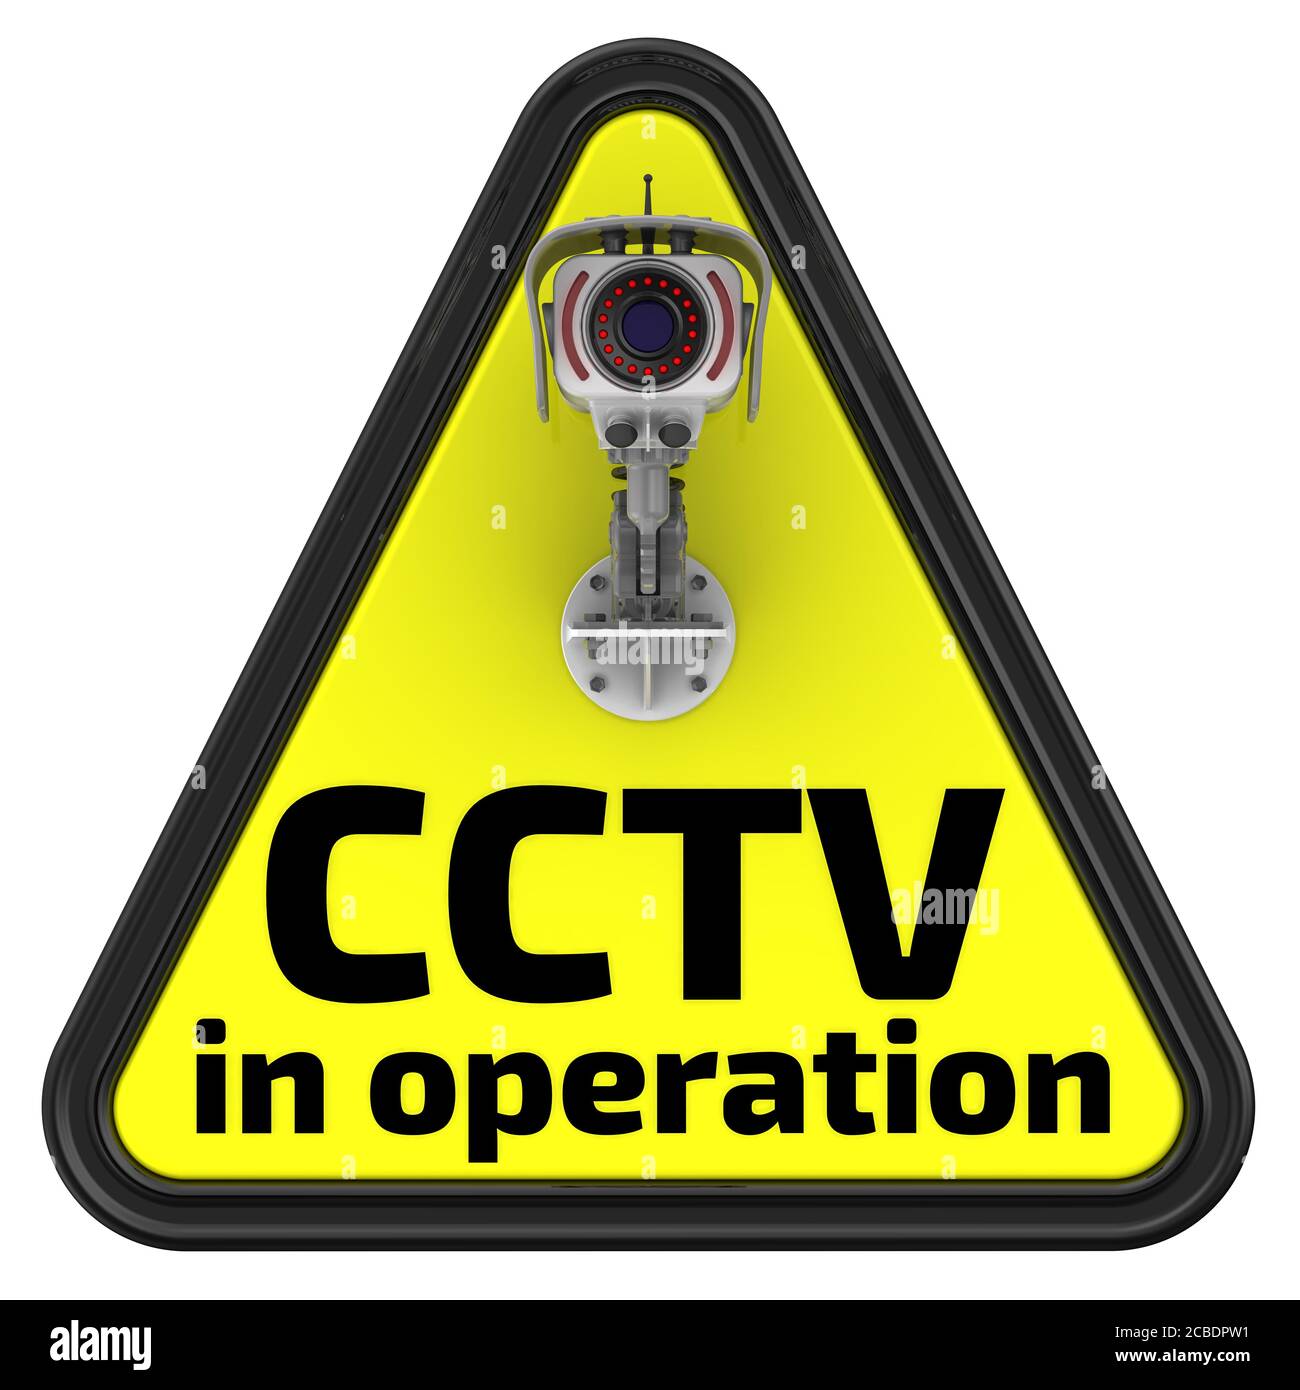 CCTV en fonctionnement. Le panneau de signalisation. Panneau de signalisation jaune avec inscription « CCTV in operation » et caméra CCTV. Illustration 3D. Isolé Banque D'Images